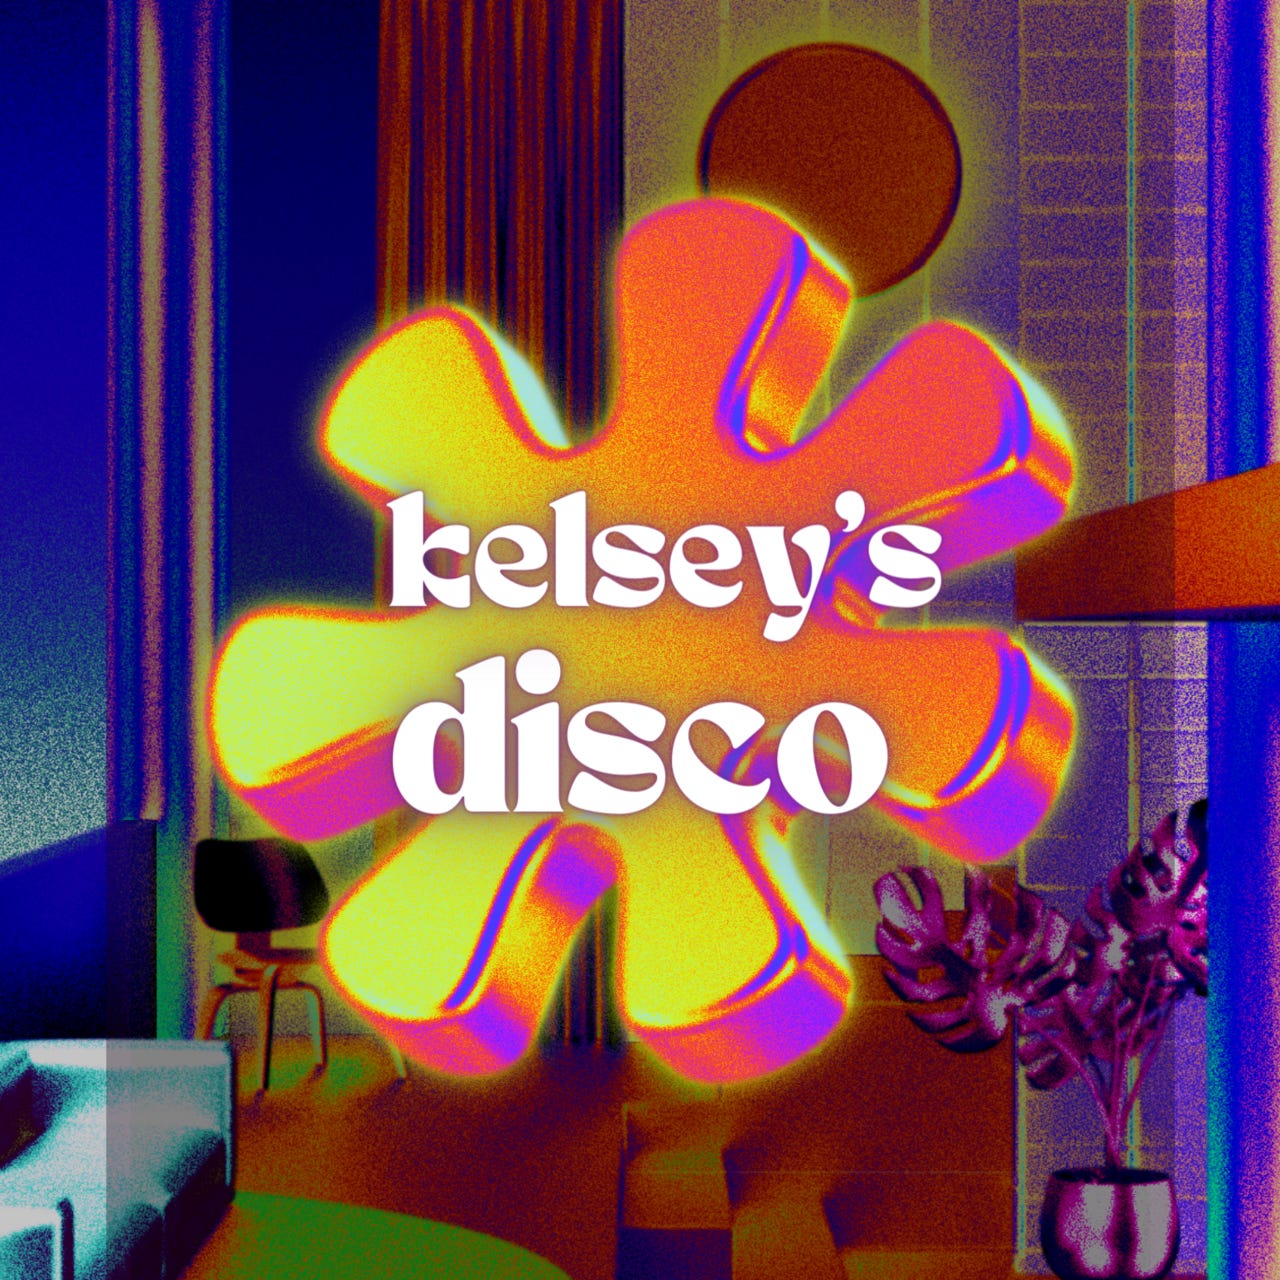 kelsey's disco